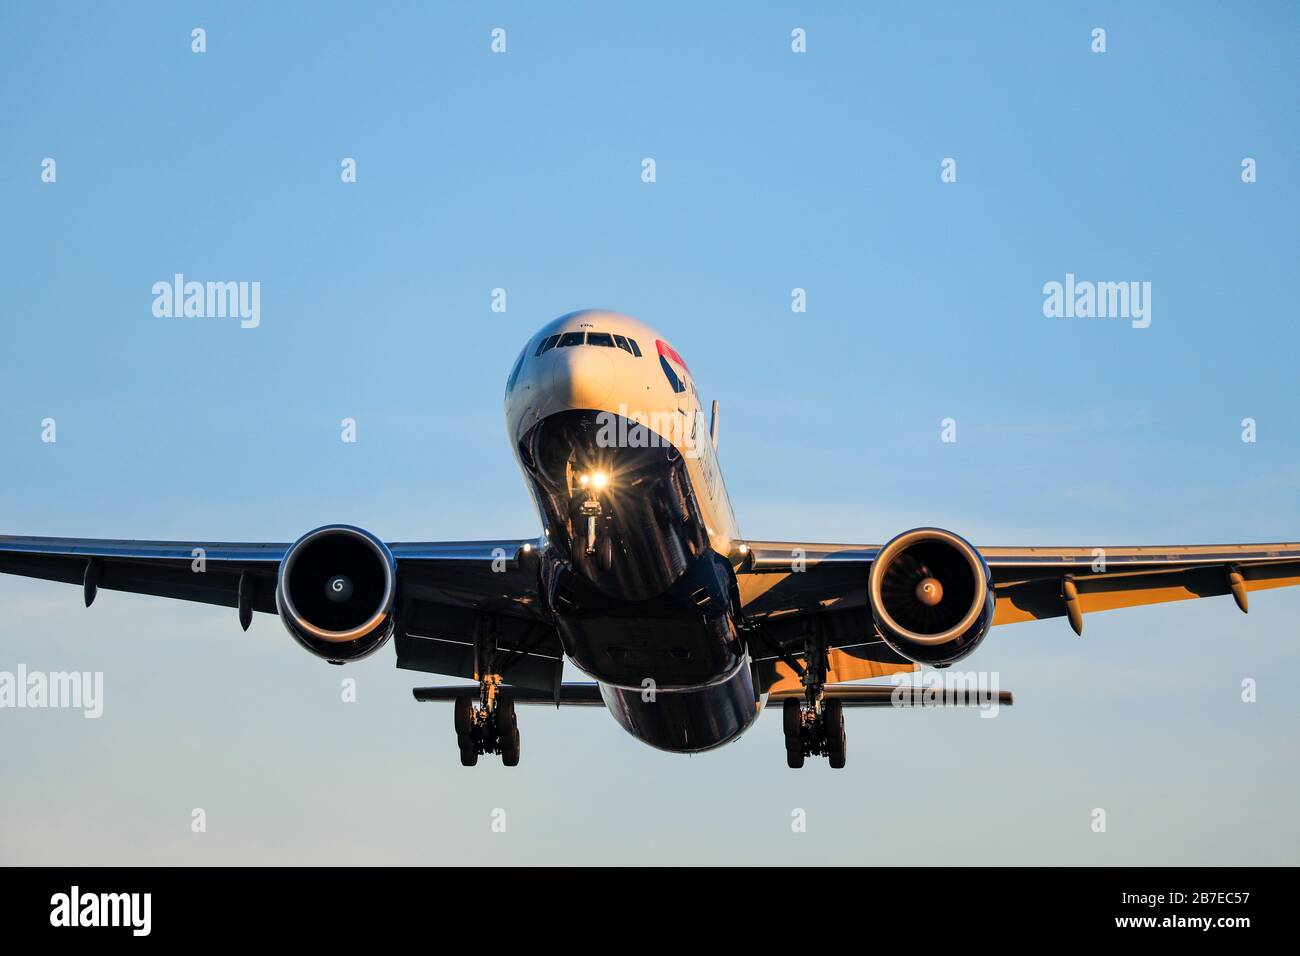 British Airways Boeing 777 enregistrement G-STBK atterrissage le 29 décembre 2019 à l'aéroport de Heathrow, Middlesex, Royaume-Uni Banque D'Images